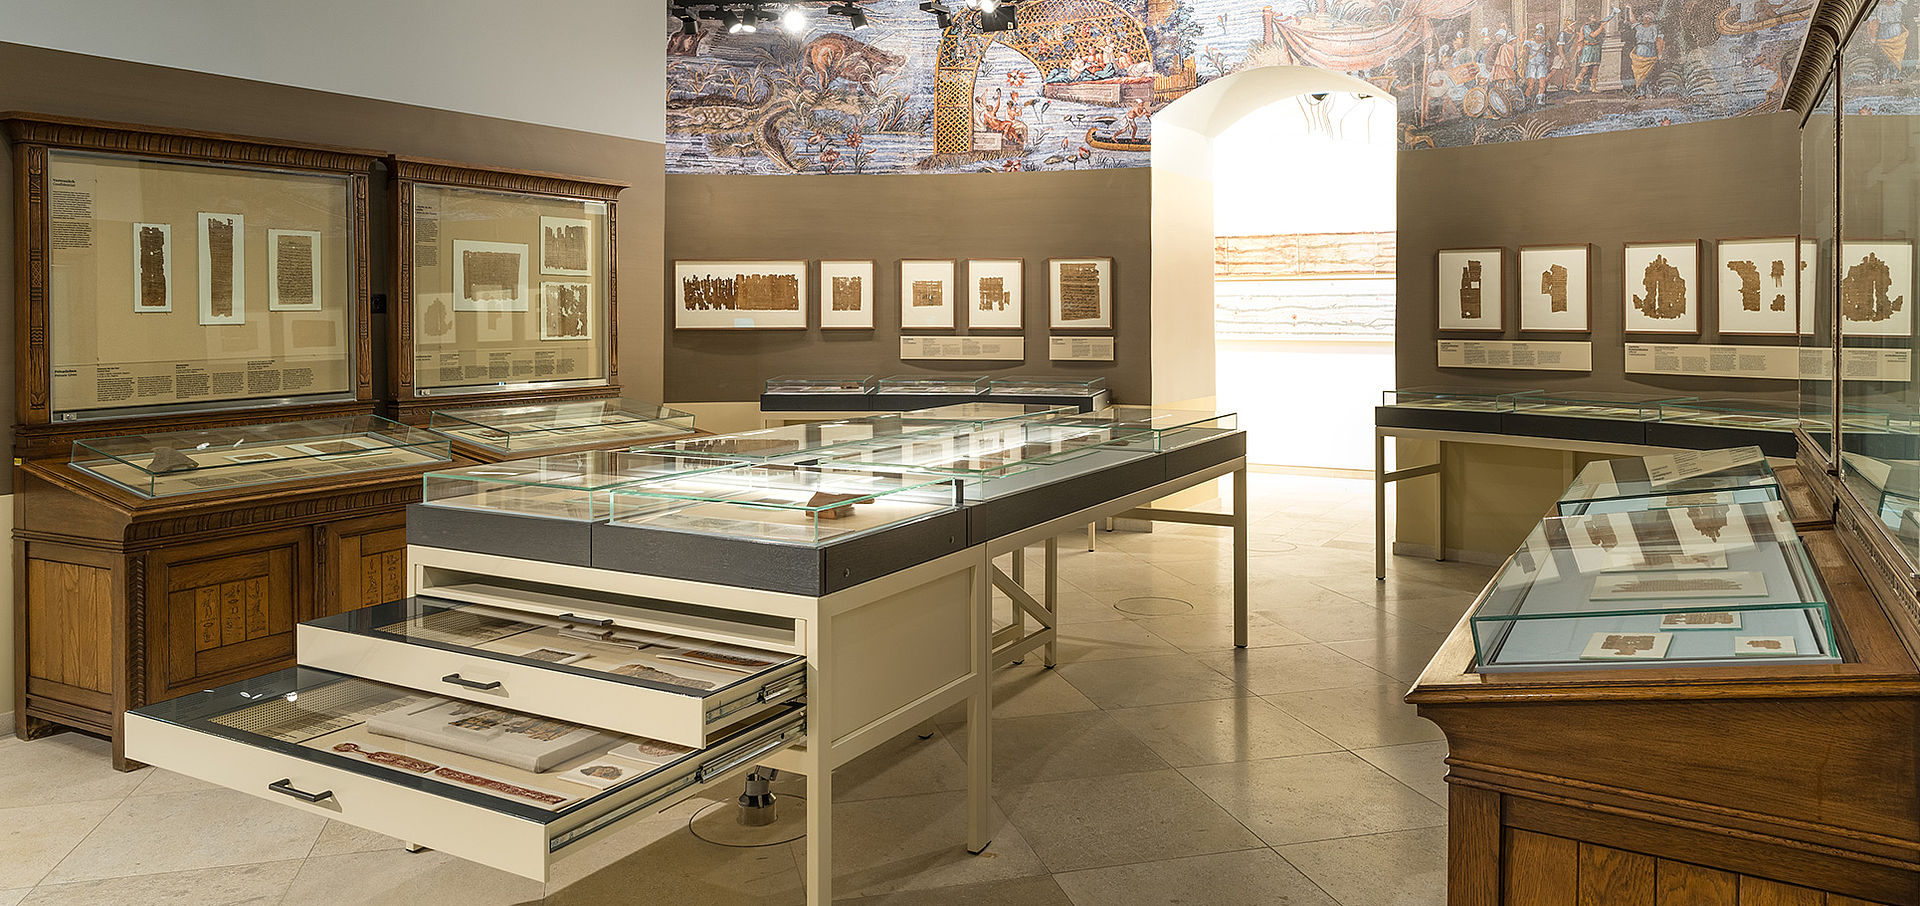 Ansicht des Papyrusmuseums mit vielen Vitrinen und Objekten und buntem Wandgemälde